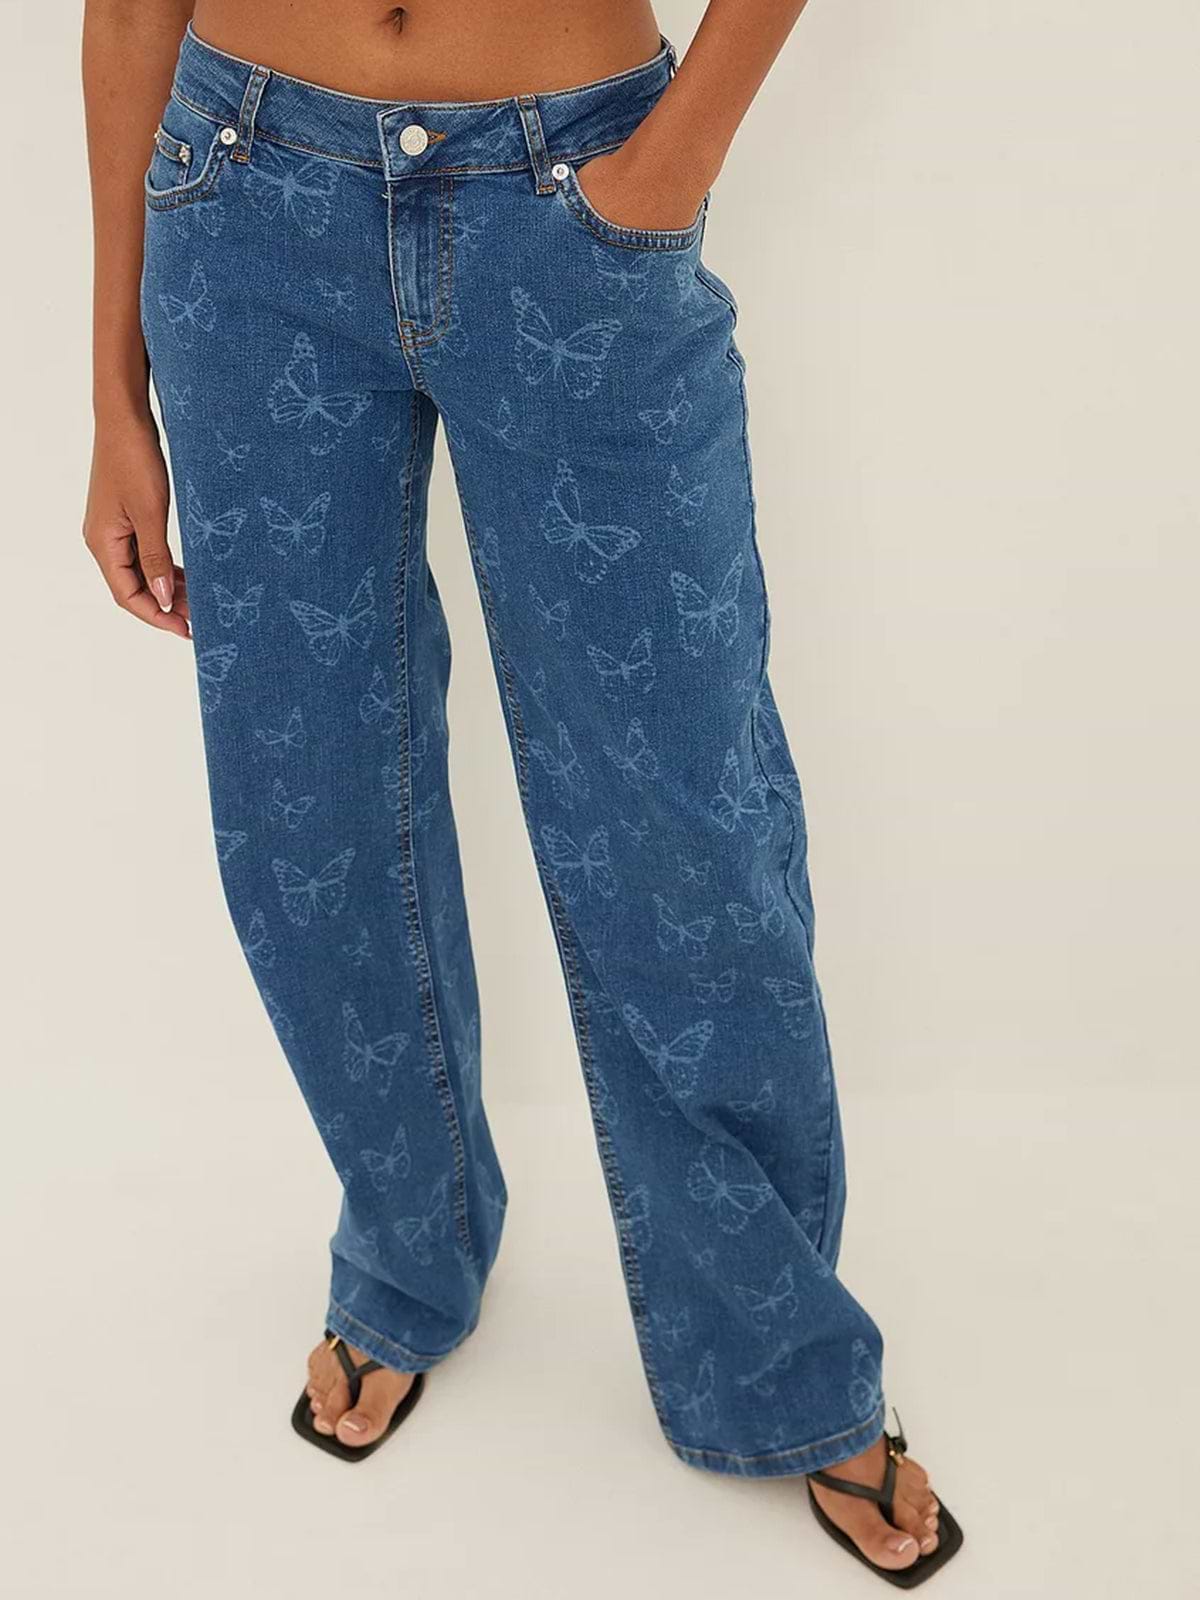 מכנסי ג'ינס בגזרה נמוכה עם הדפס פרפרים